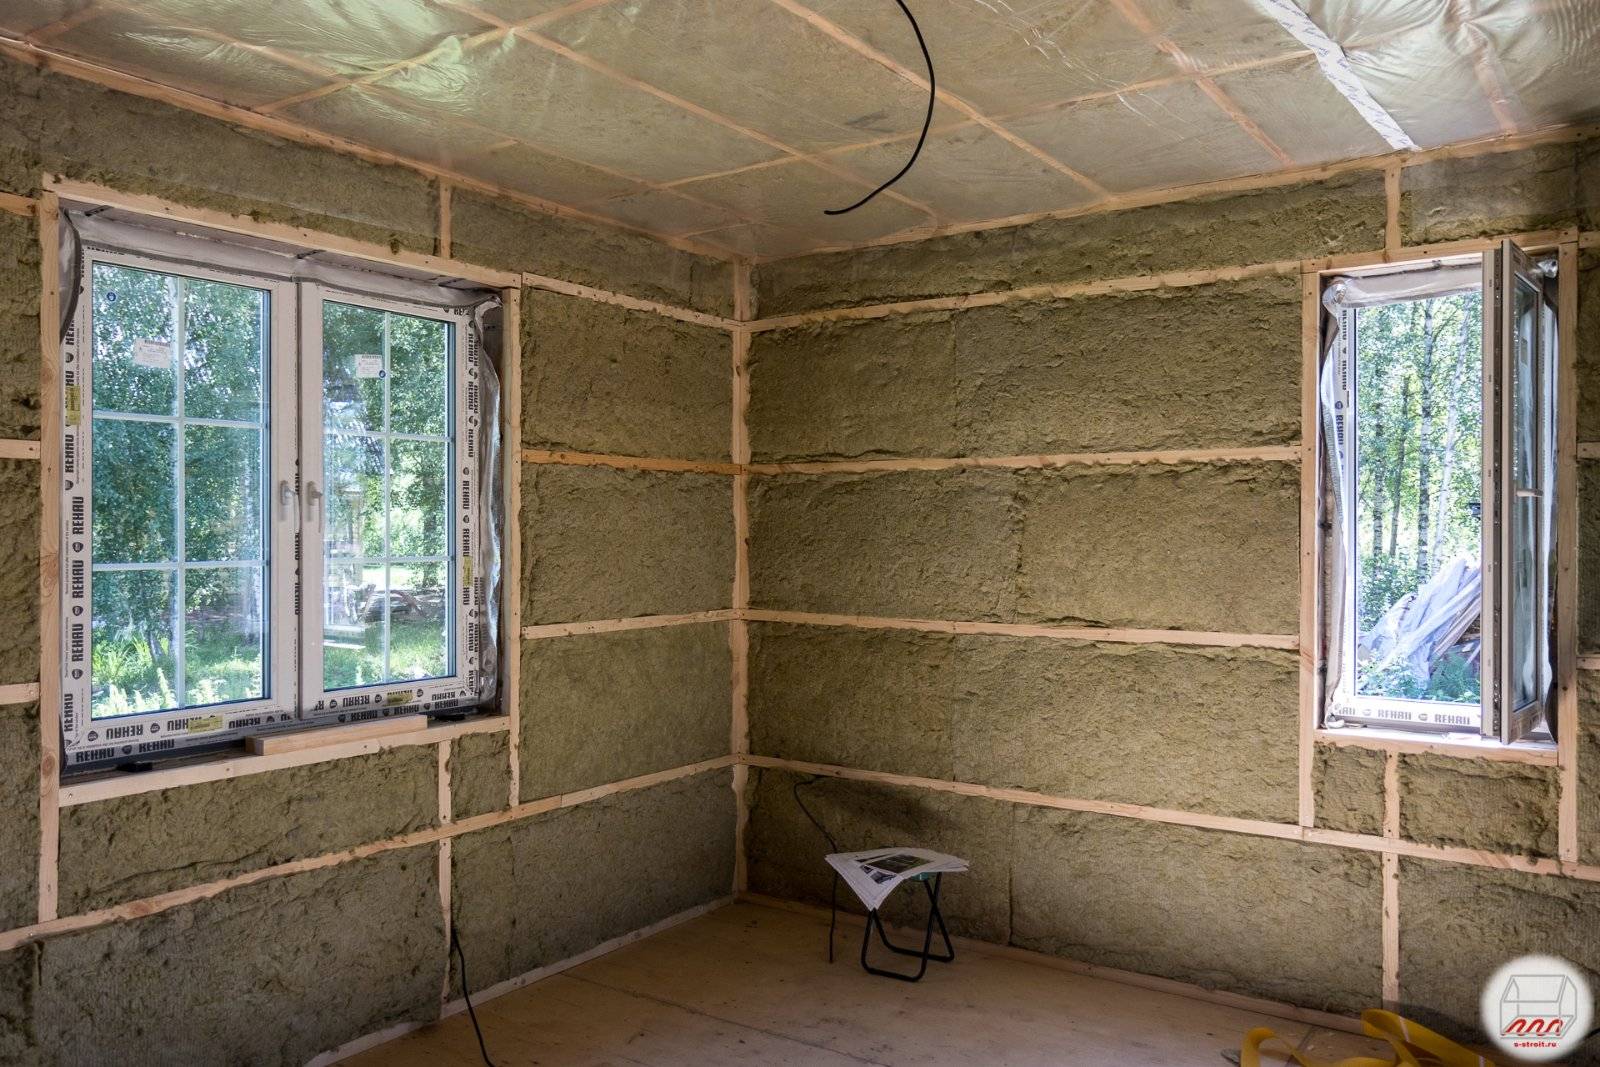 Утеплитель для стен внутри дома на даче – этапы работ и материалы